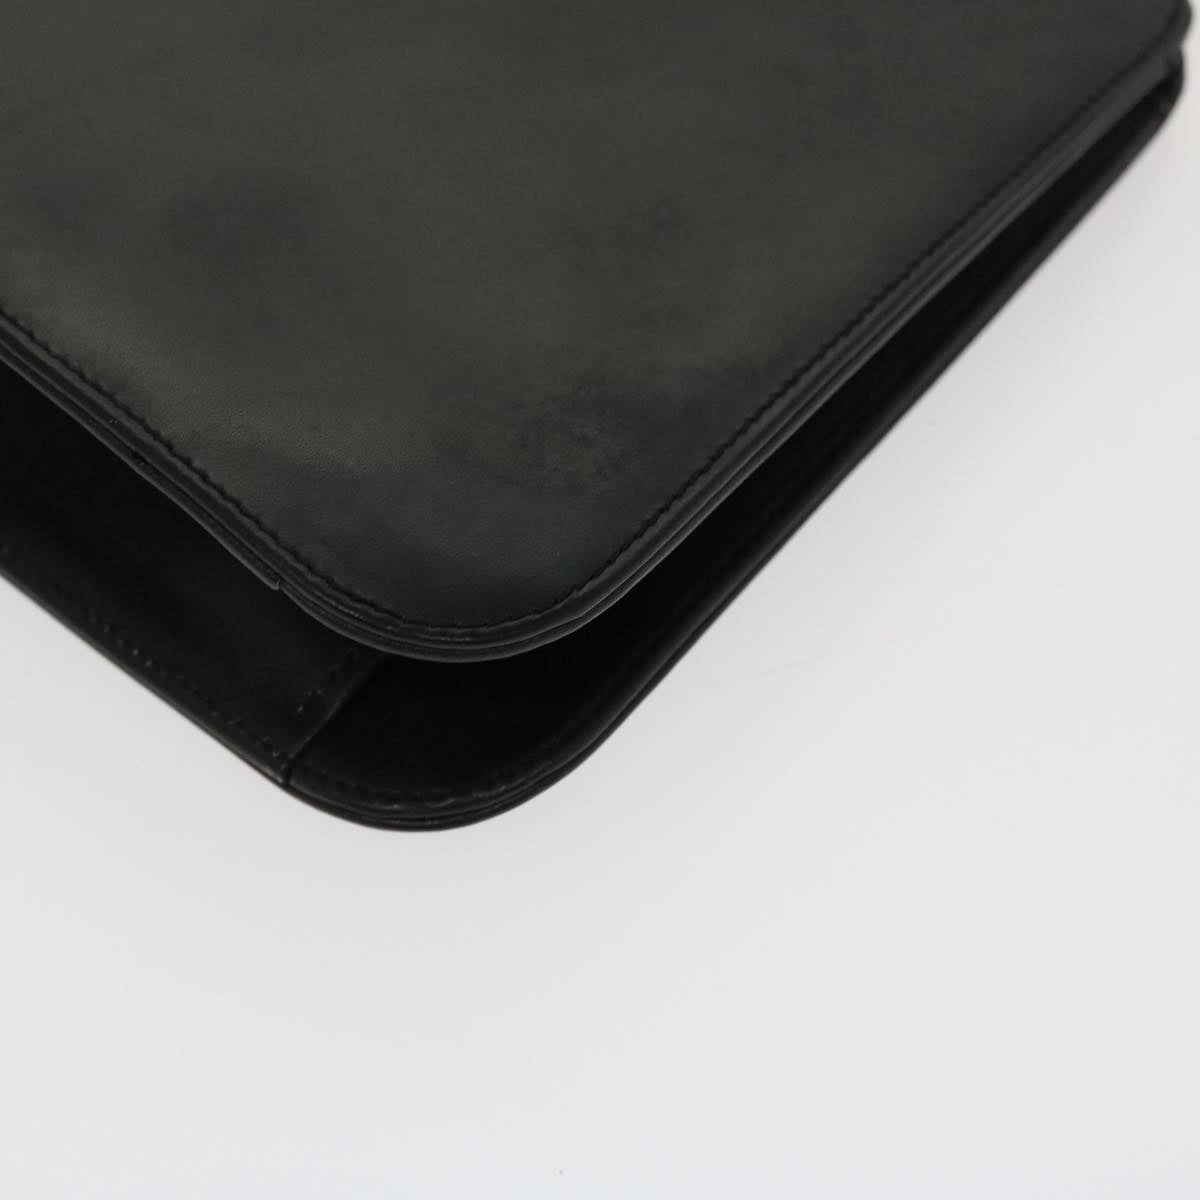 Salvatore Ferragamo Hand Bag Leather Black Auth 39142